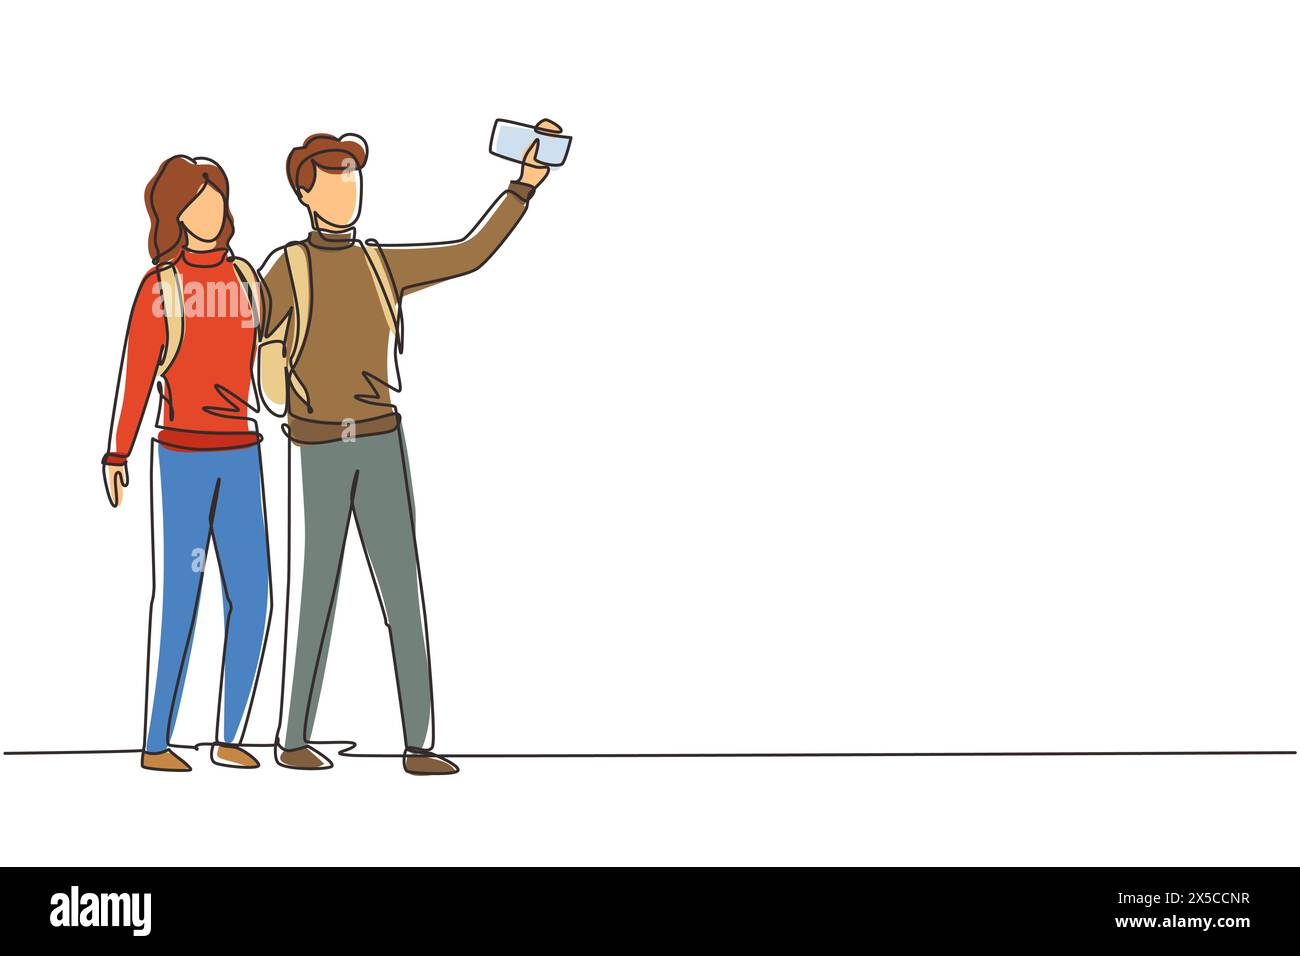 Einzelnes durchgehendes Zeichnungspaar, das in voller Länge steht und versucht, Selfie mit dem mobilen Gerät in der Hand zu machen. Mann und Frau werden zusammen fotografiert. Stock Vektor